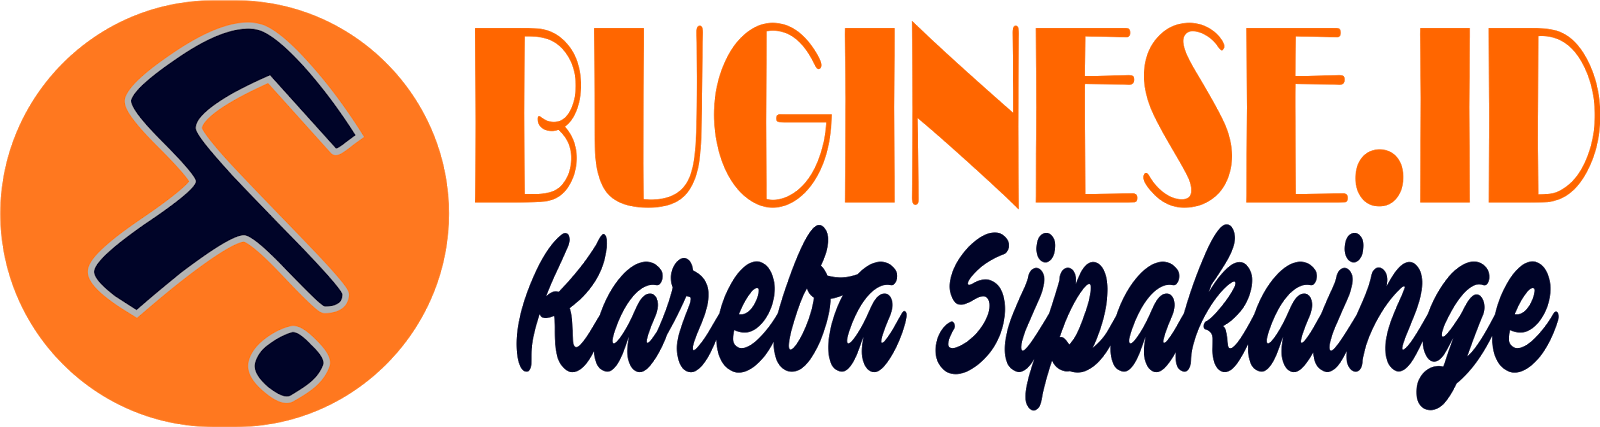 Buginese.id  | Kareba Sipakainge